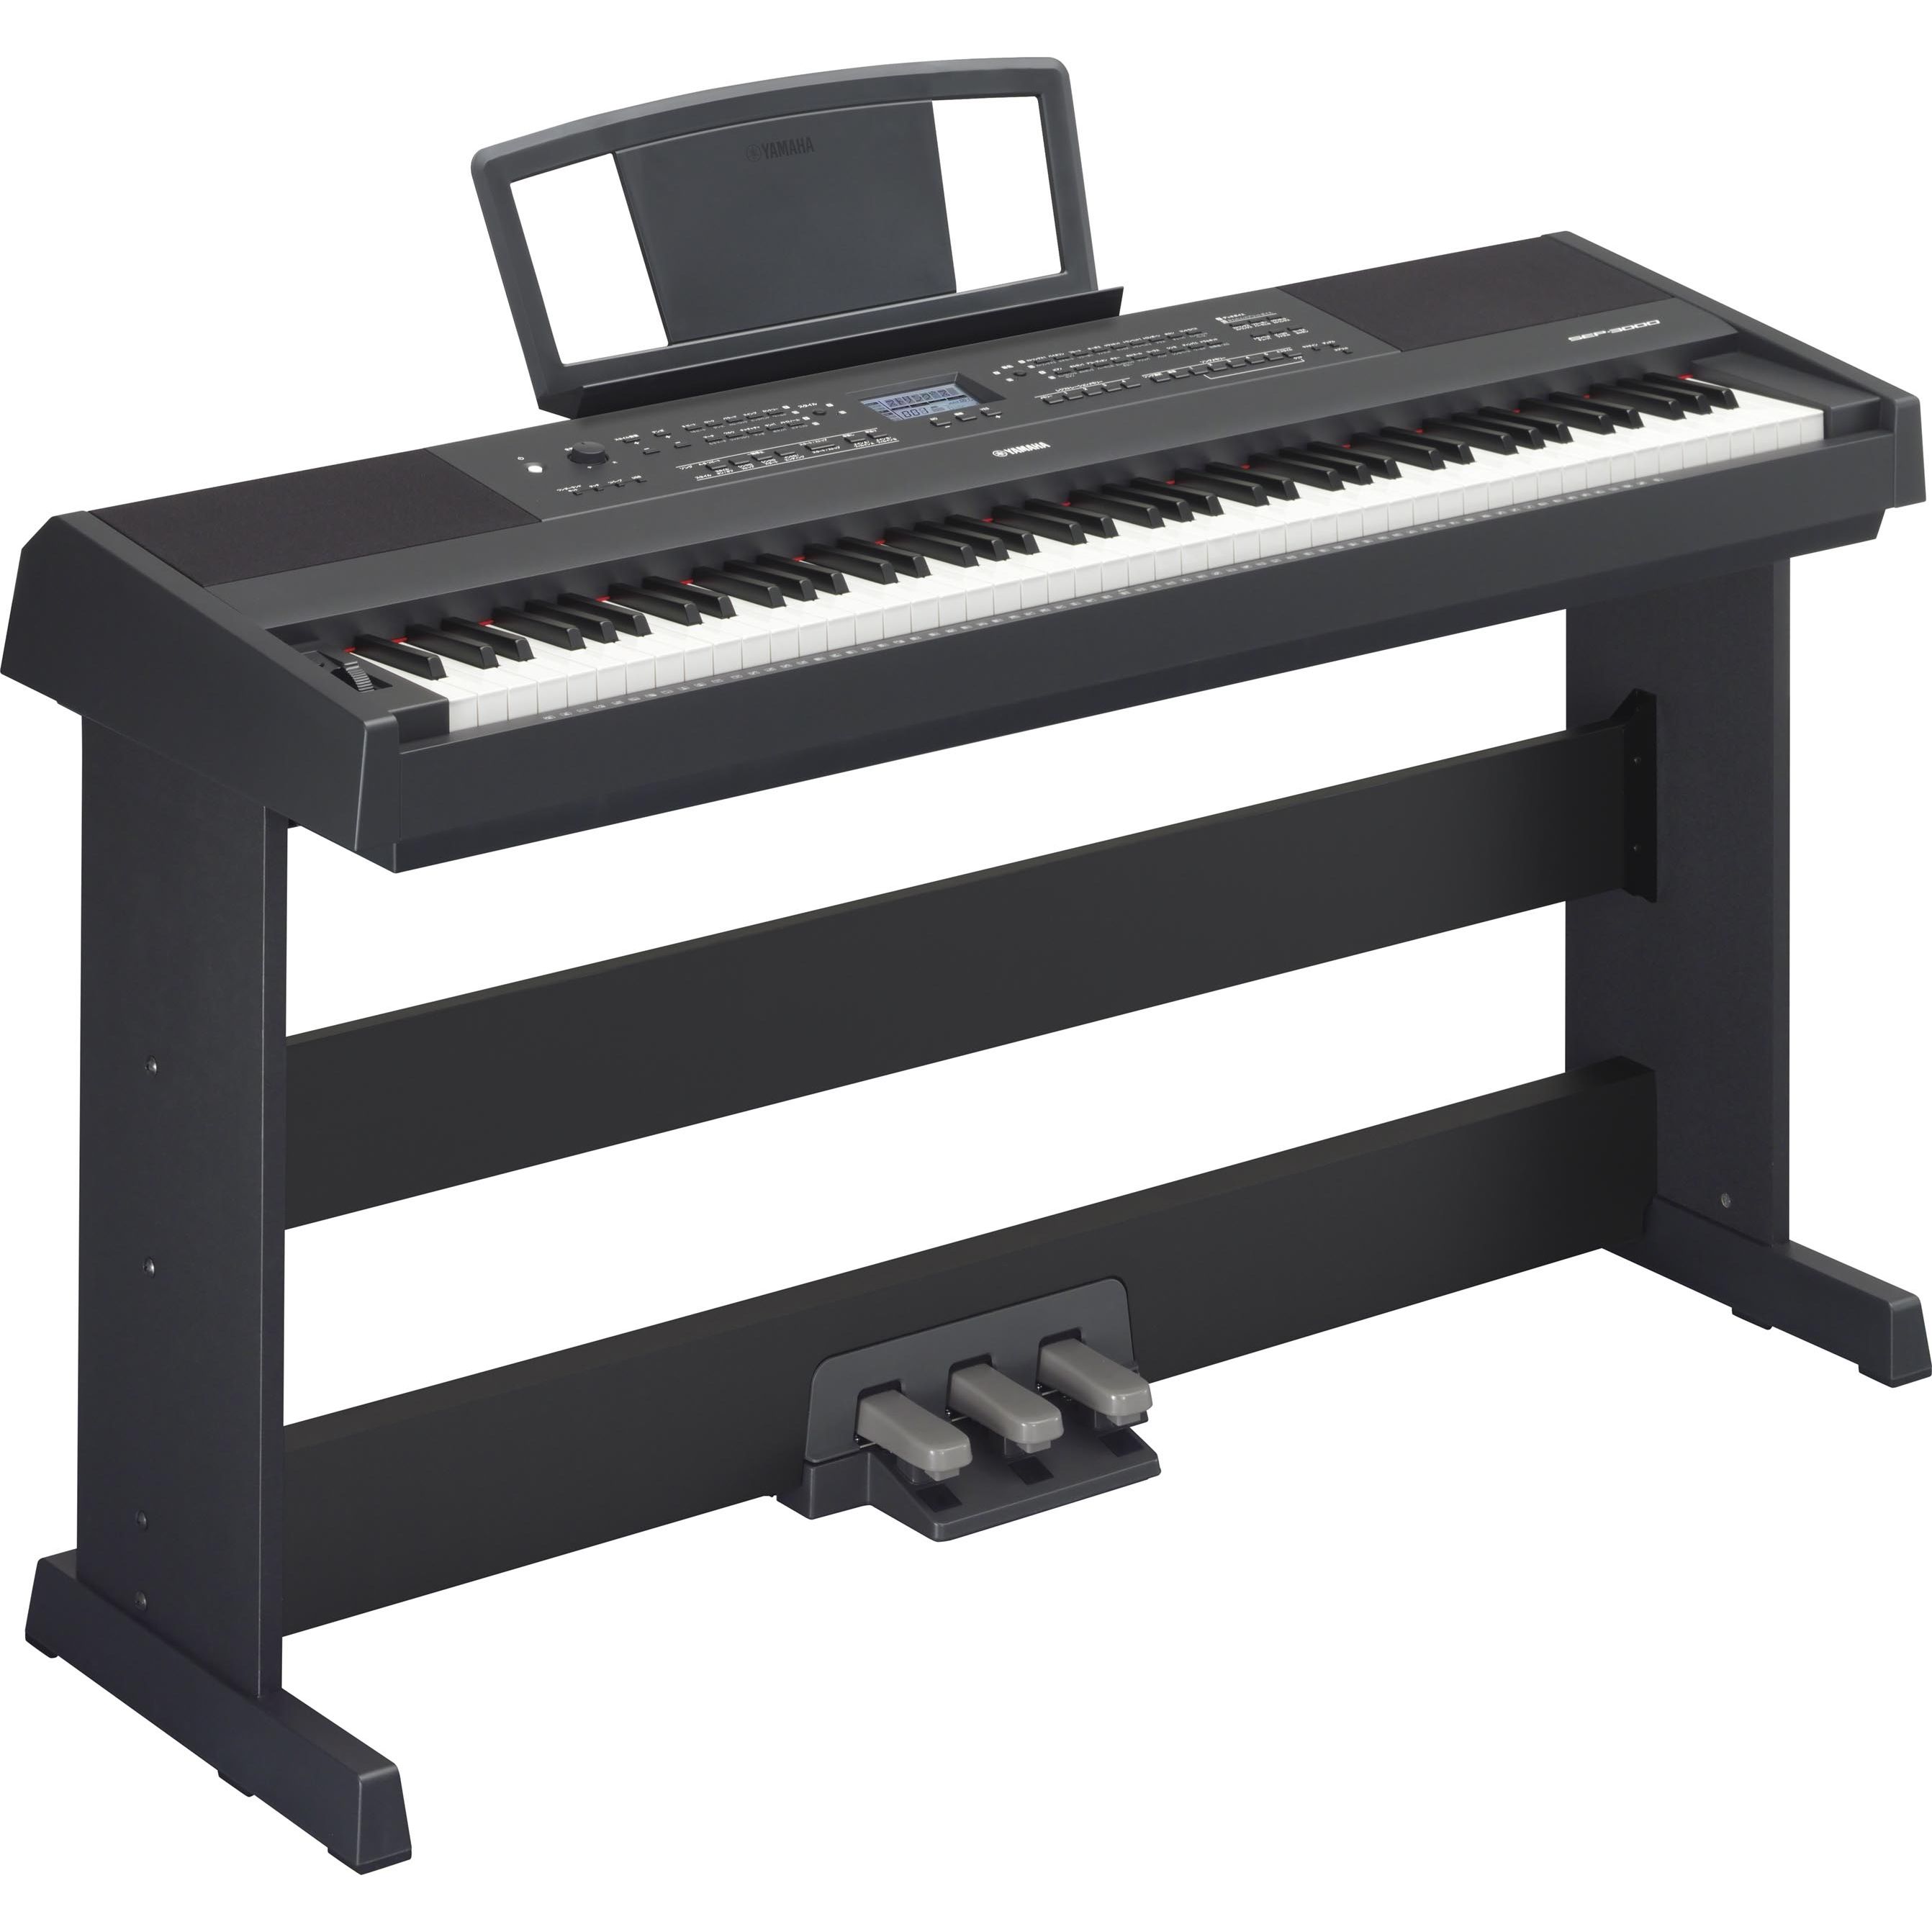 ヤマハ | SEP-3000 - 学校用電子ピアノ - 概要